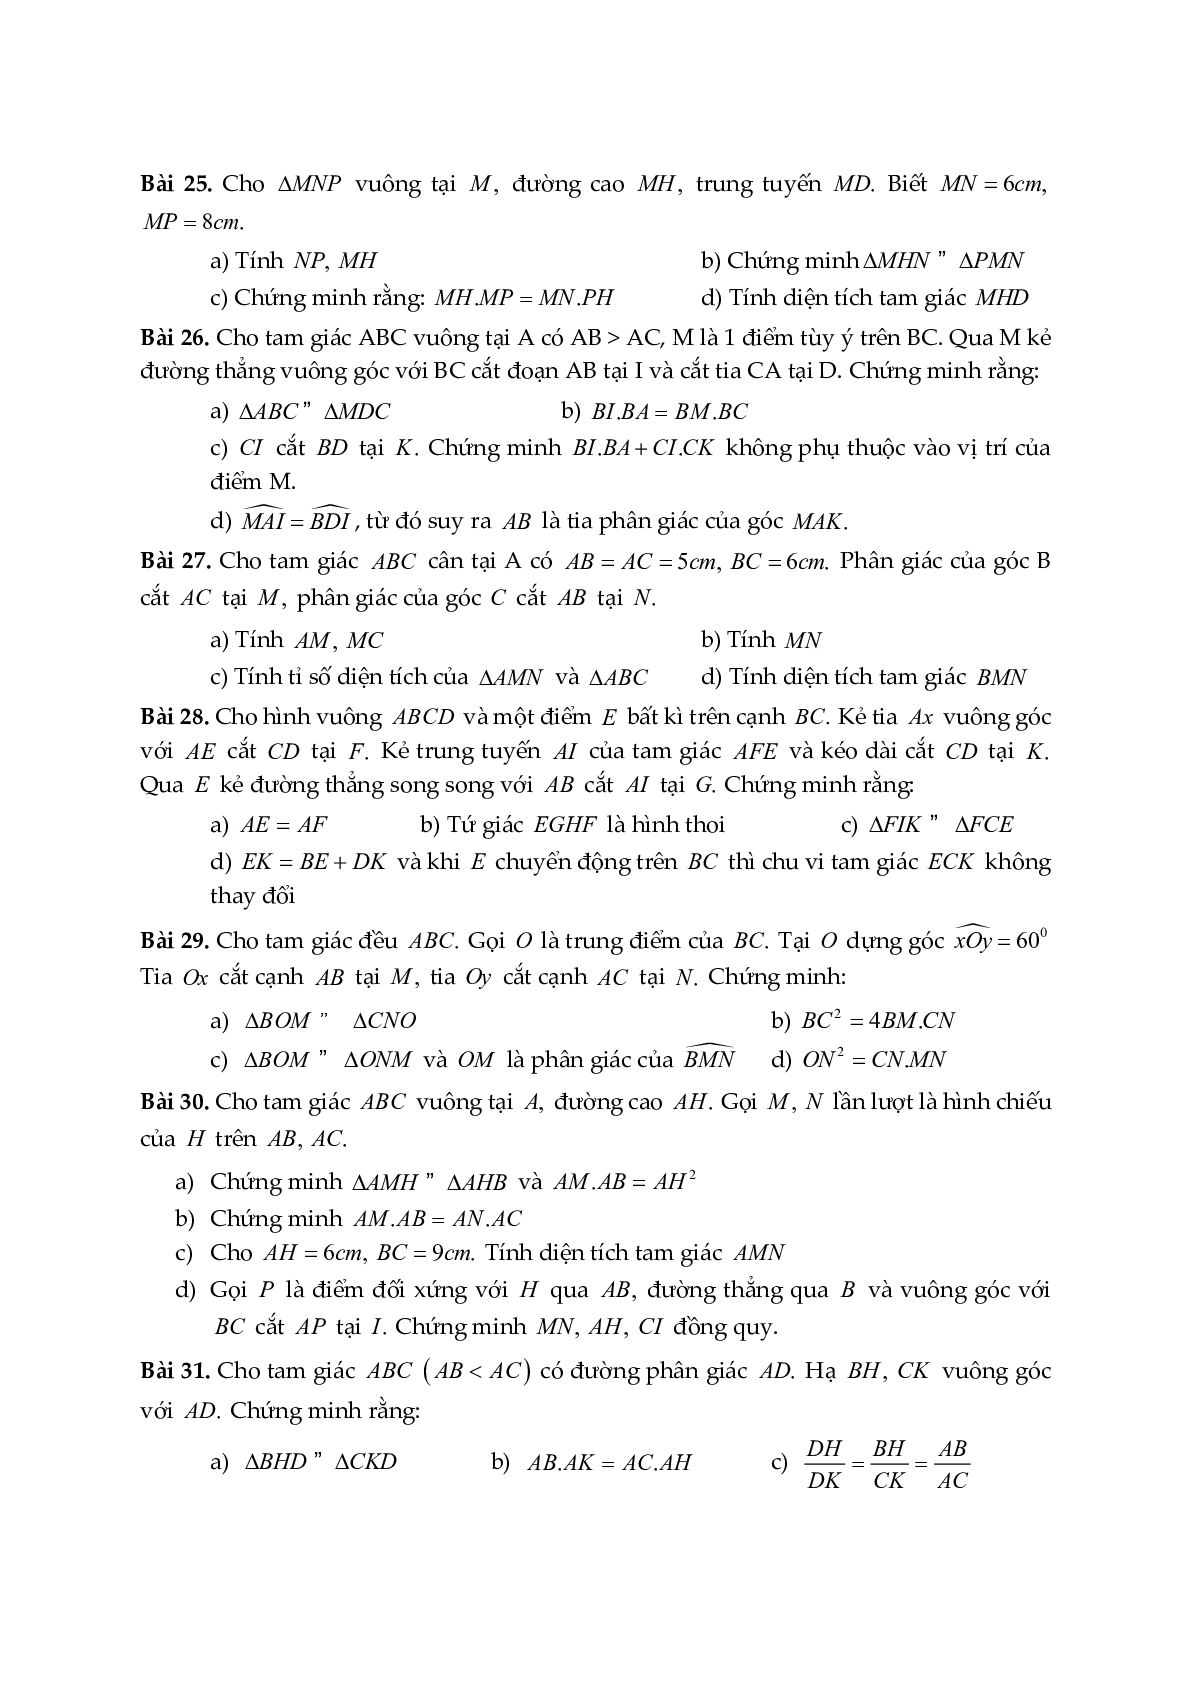 Đề cương ôn tập học kỳ II môn toán 8 năm học 2018-2019 Phòng GDĐT Cầu Giấy - Hà Nội (trang 4)